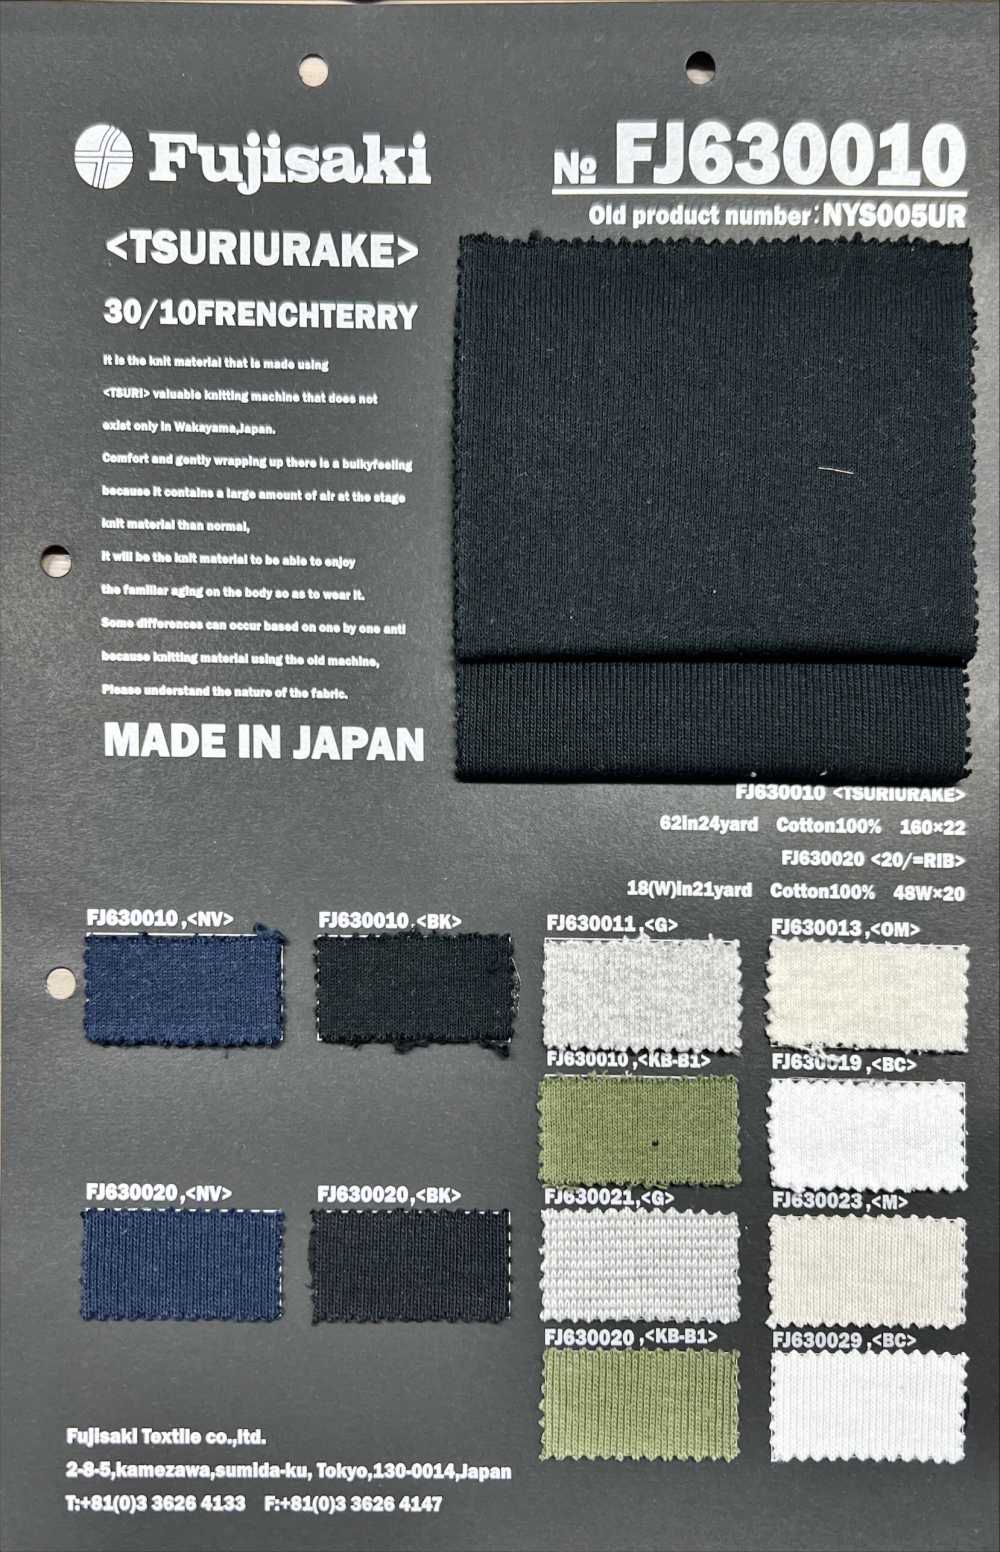 FJ630011 Fleece Cut-and-sew Textile Wood[Textile / Fabric] Fujisaki Textile